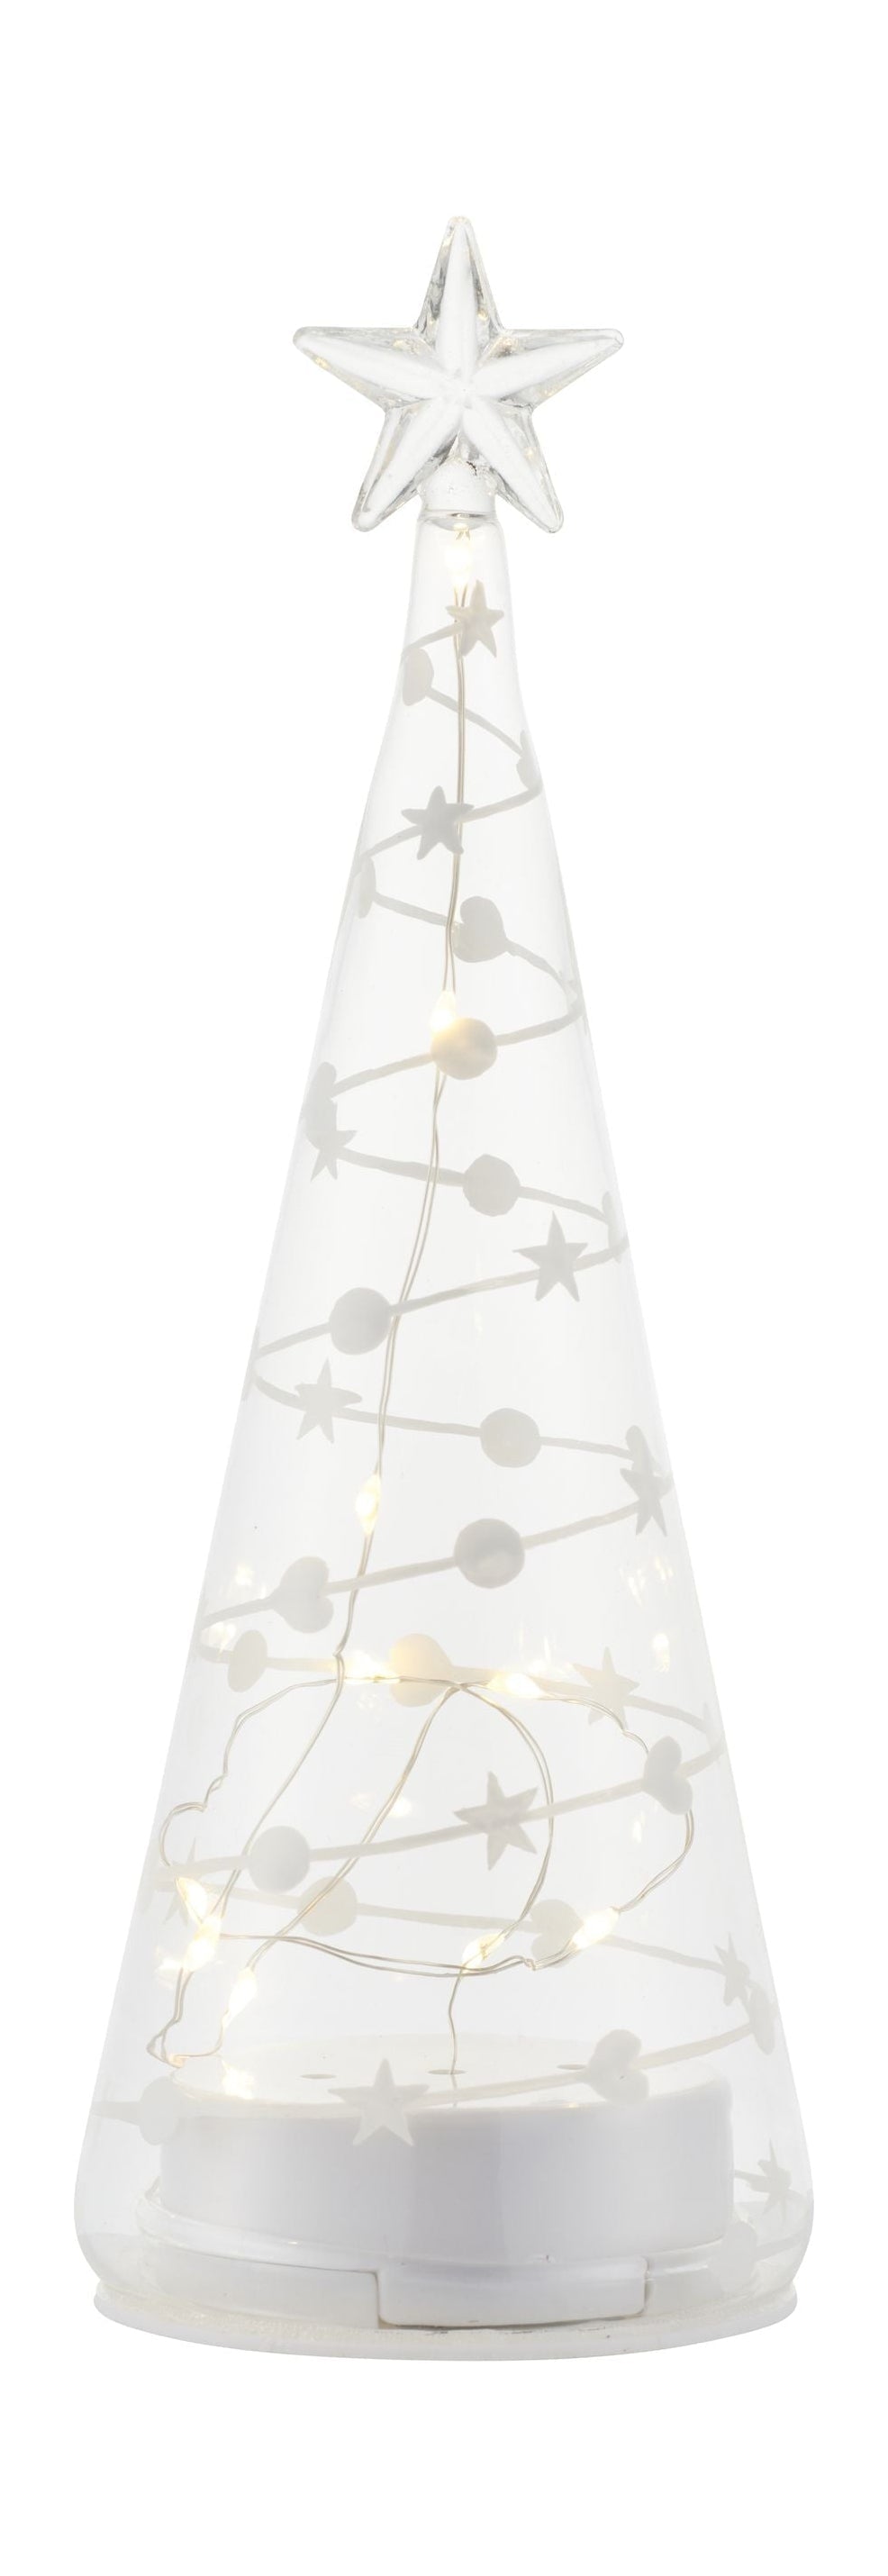 Sirius Sweet Christmas Tree, H22 cm, bílá/čistá